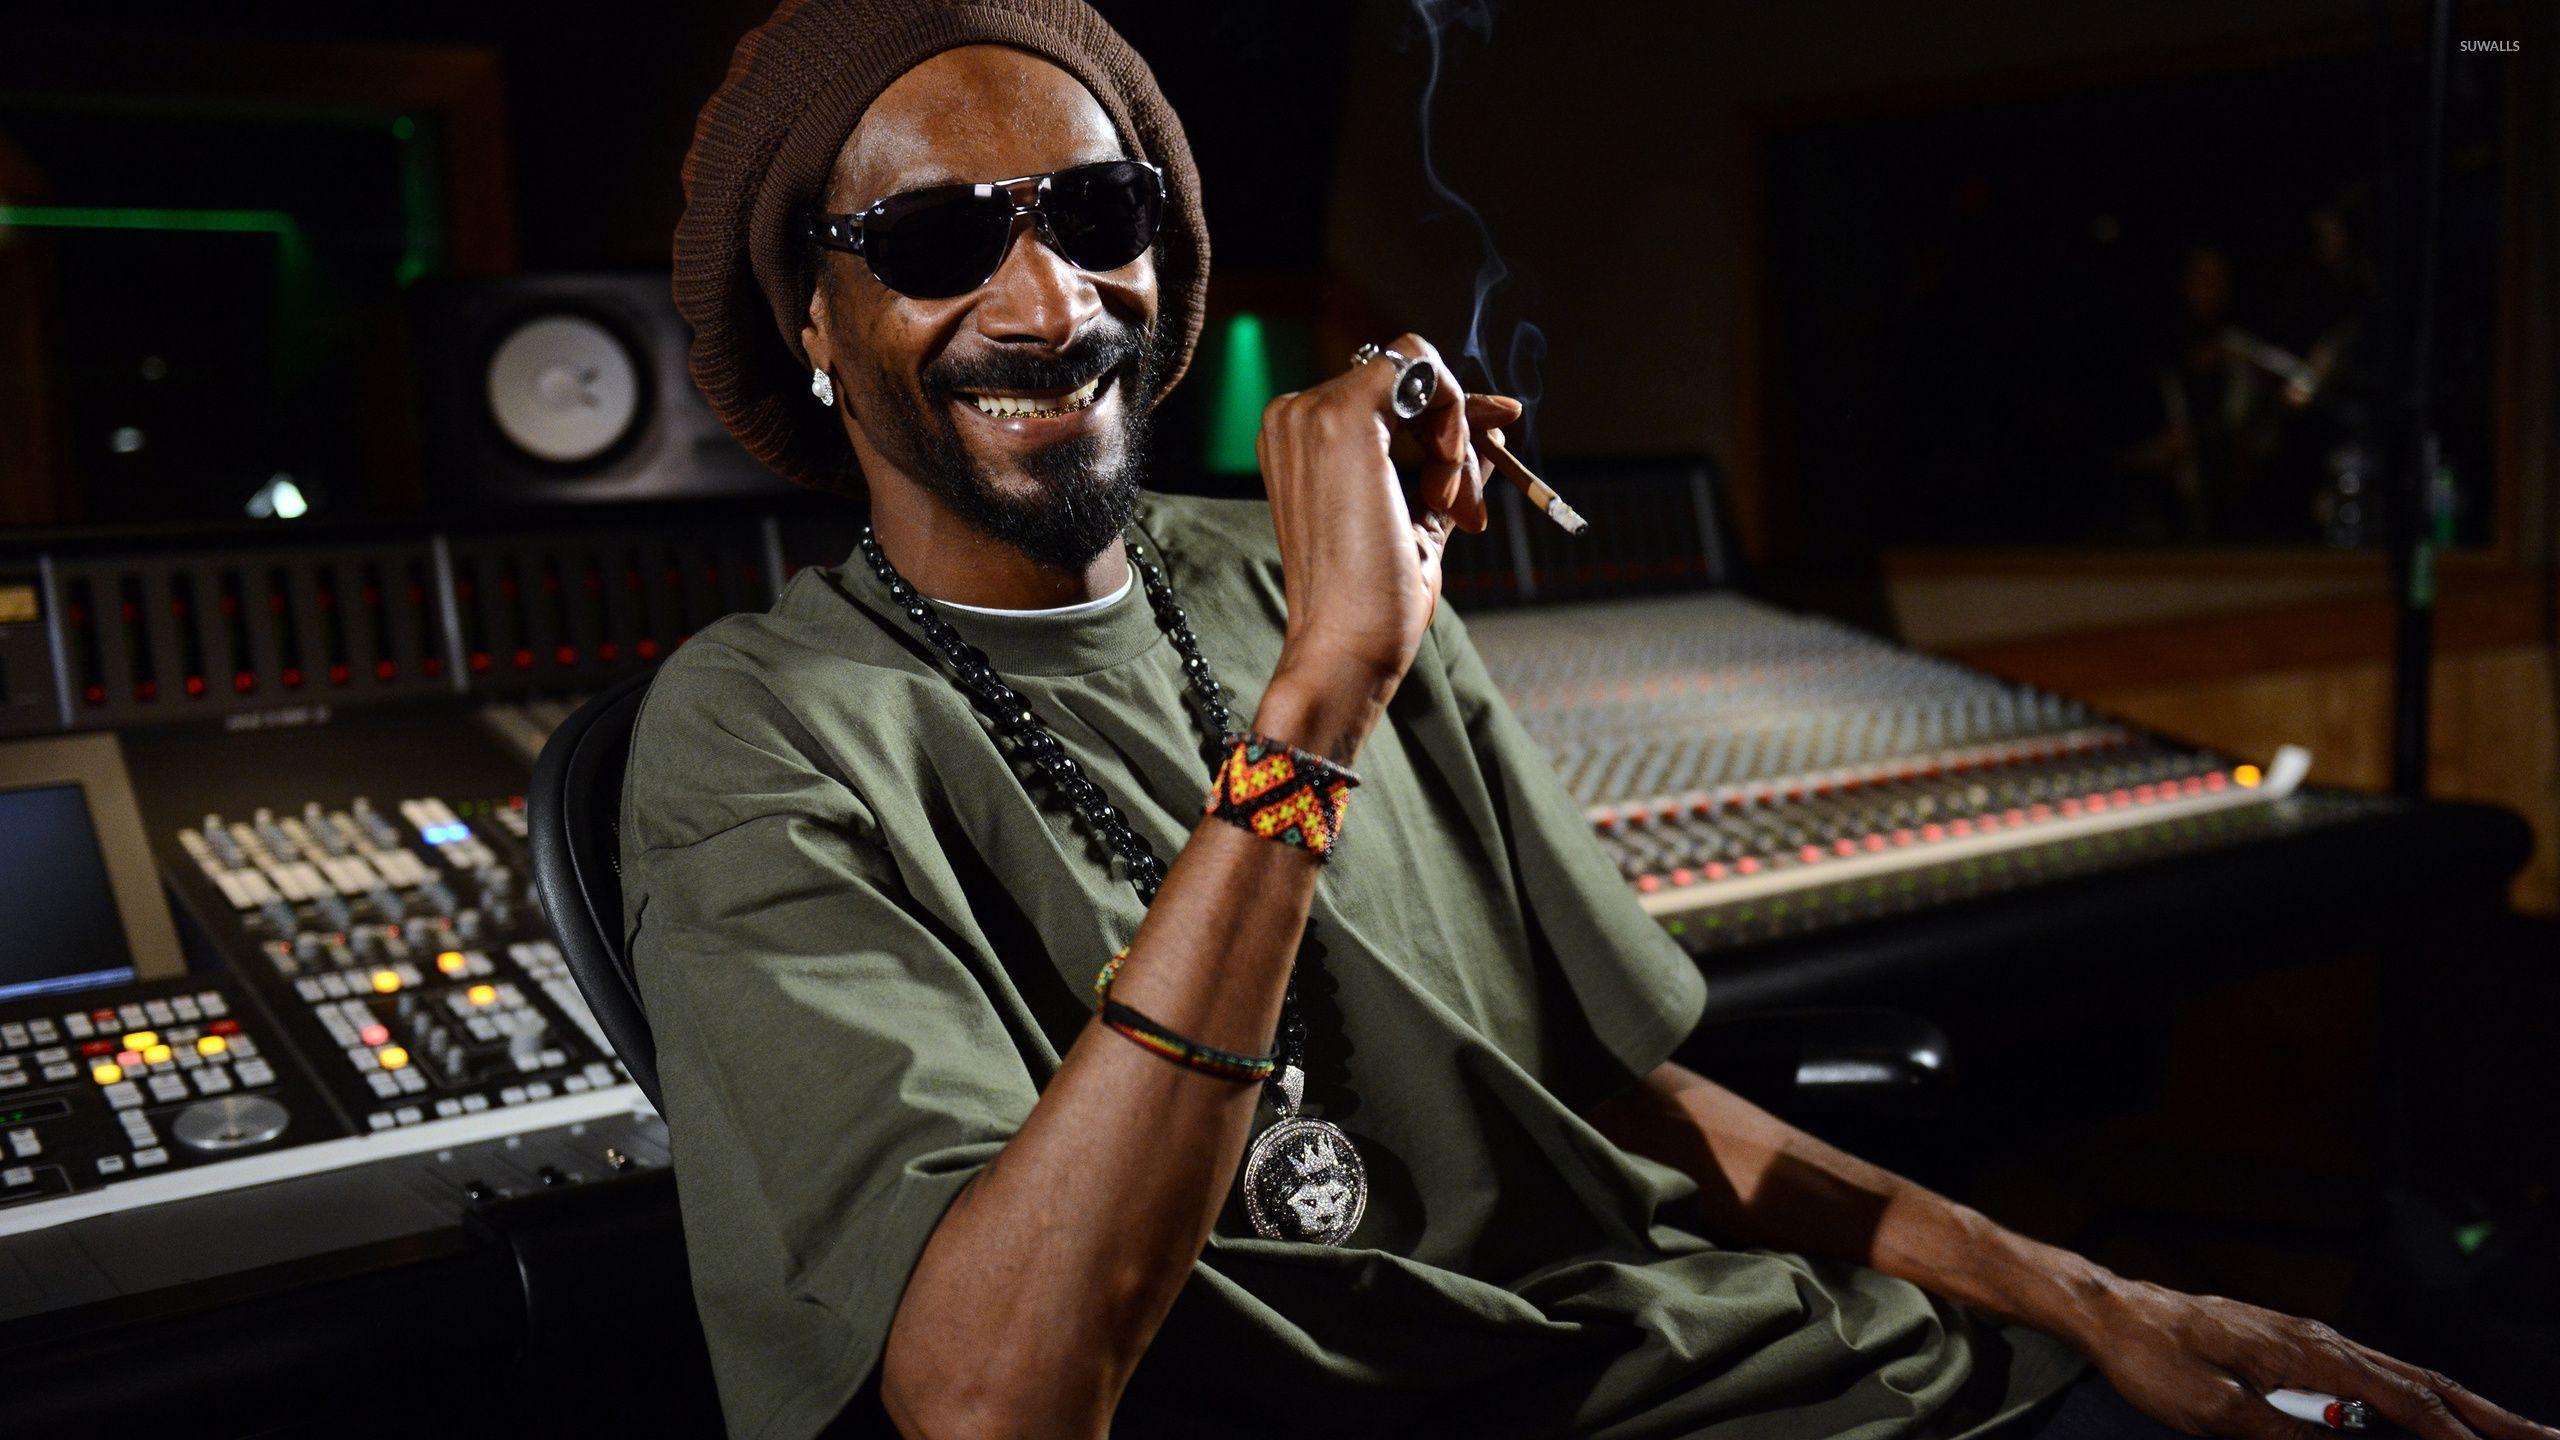 Snoop Dogg Wallpaper Discover more Actor American businessman Calvin  Cordozar Broadus Producer wallpaper httpswwwenwallpapercom  Snoop  dogg Dogg Snoop